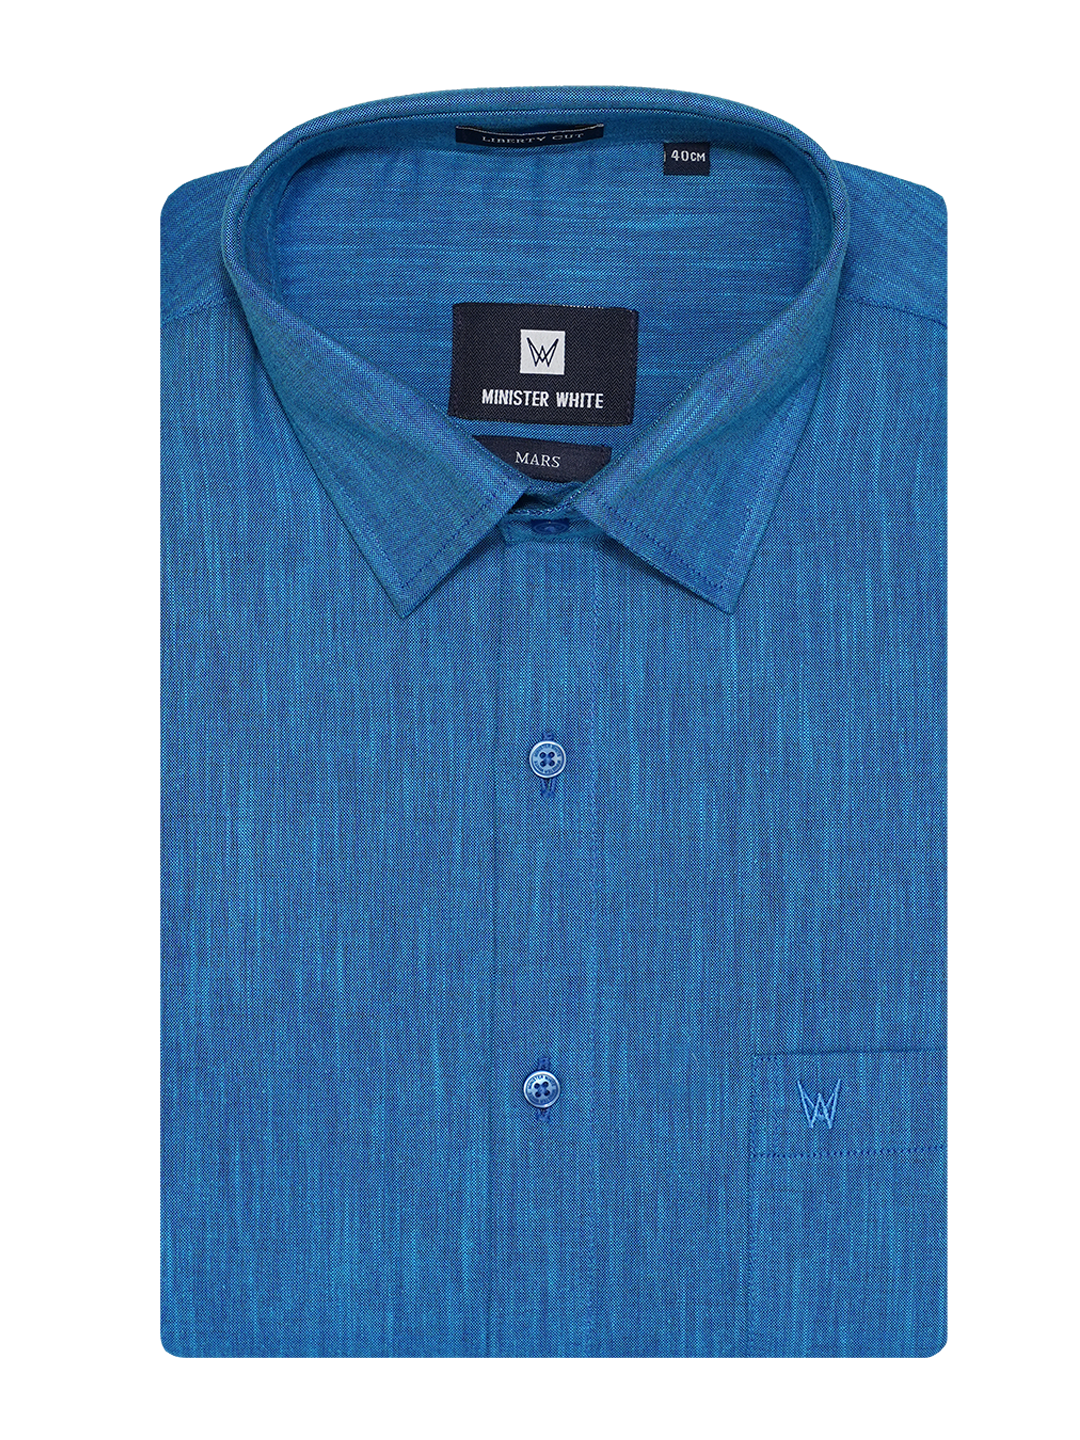 Mens Cotton Regular Fit Blue Colour Shirt Mars